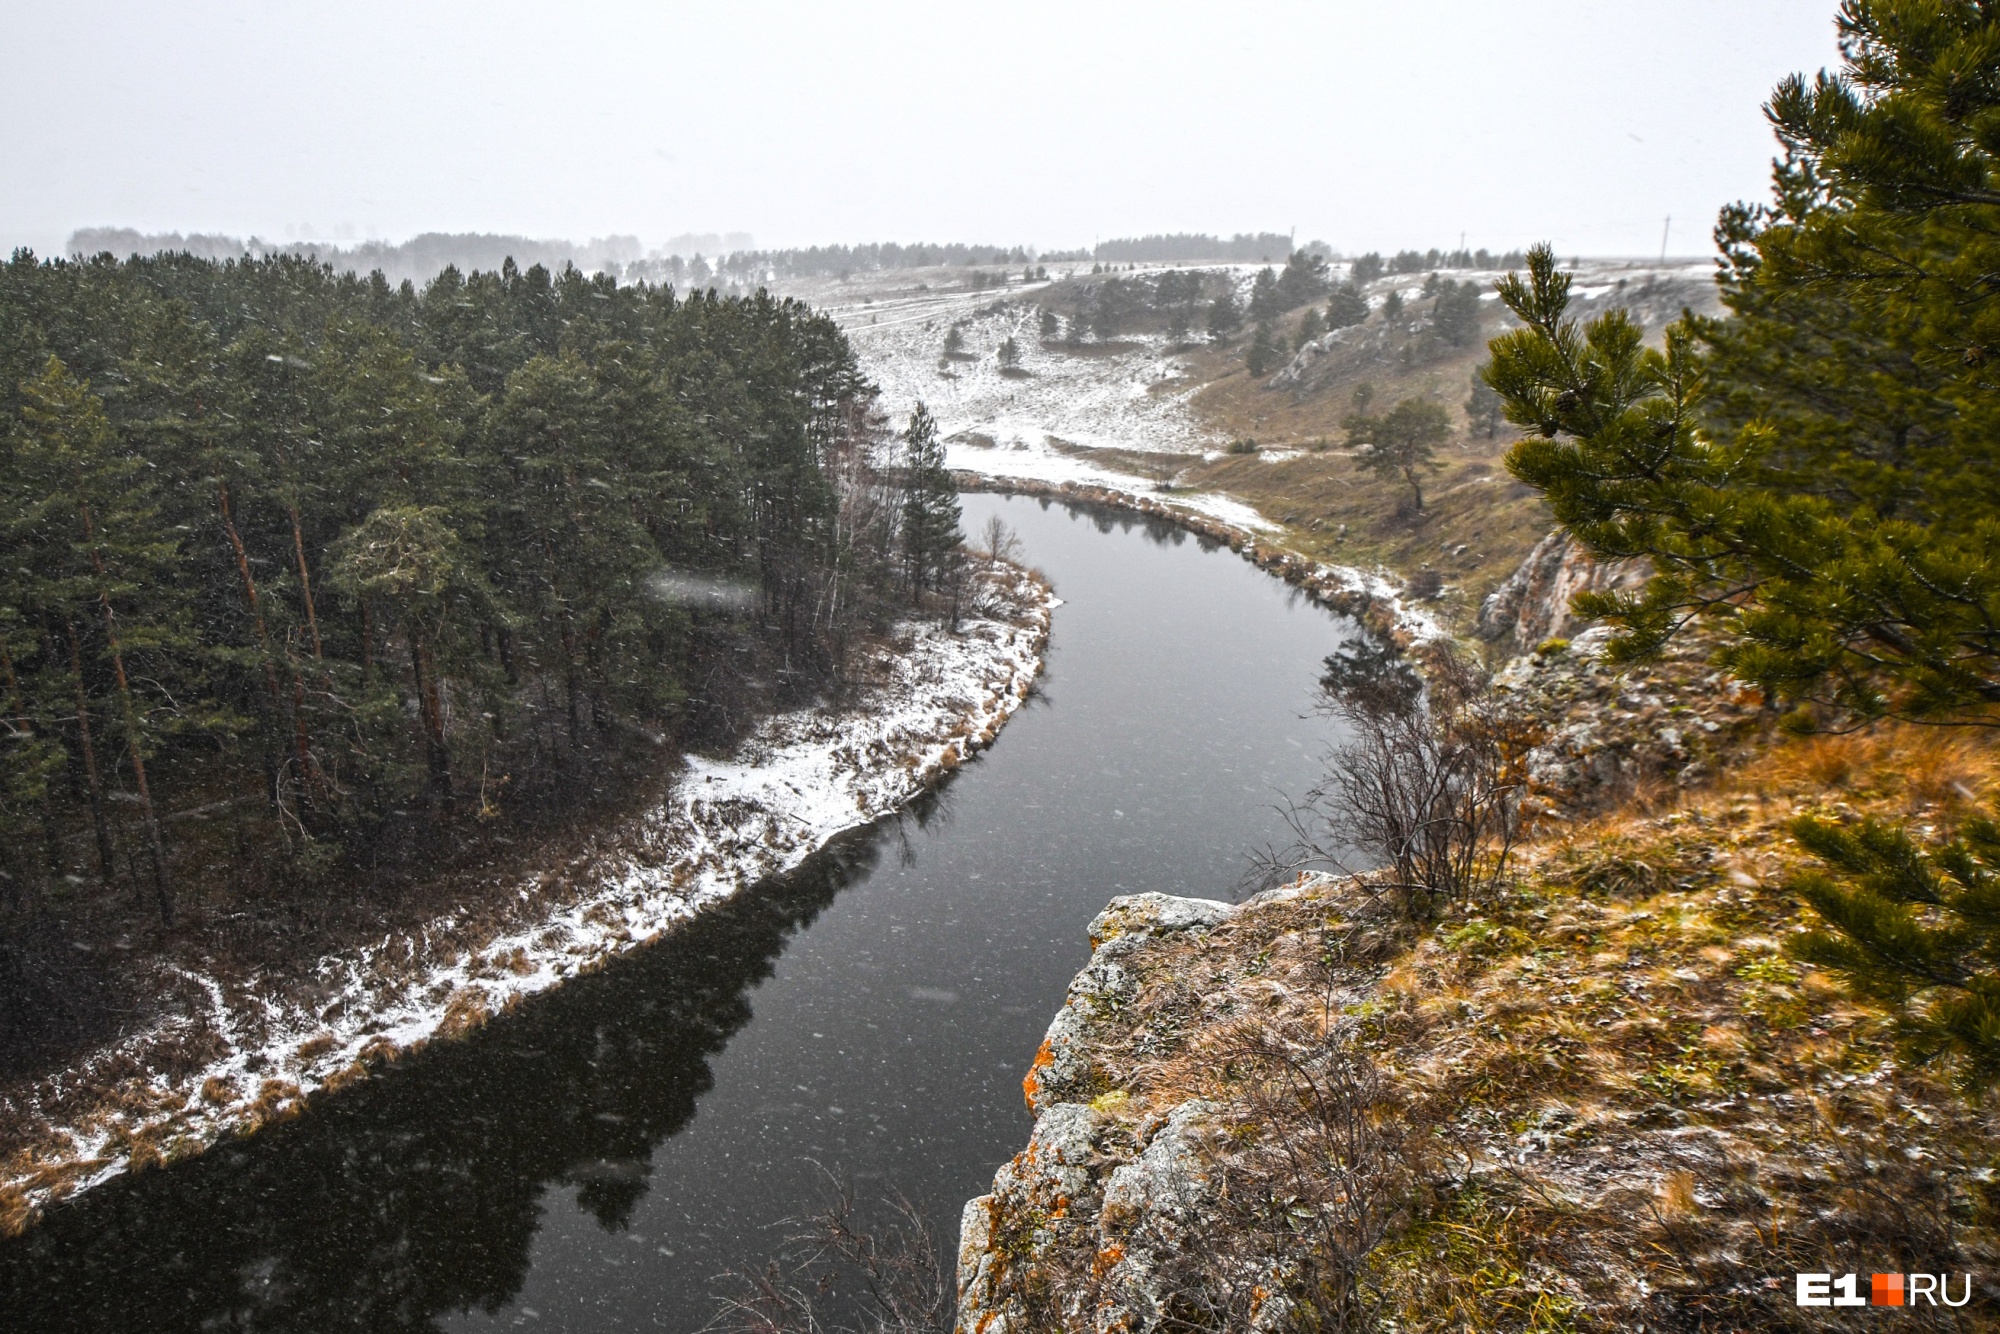 Циклон с Ямала принесет в Свердловскую область первое серьезное похолодание